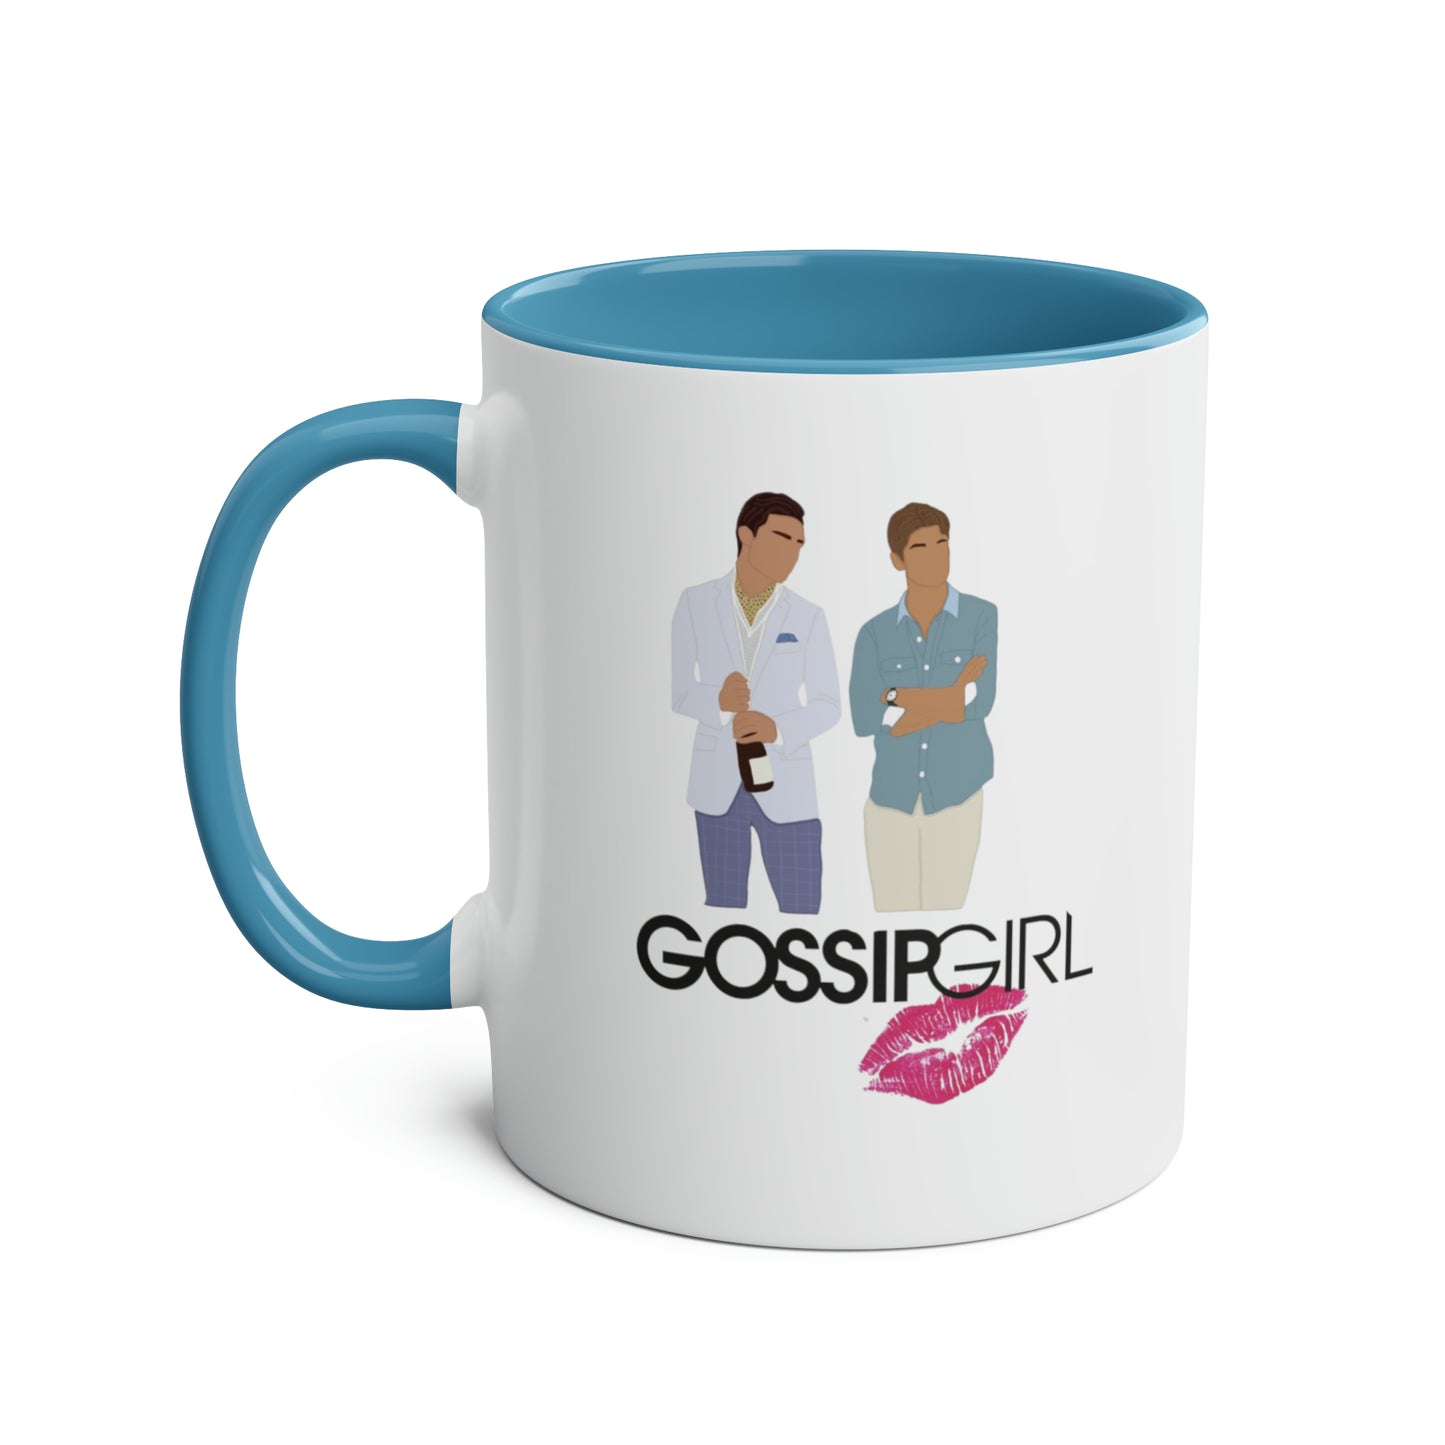 Chuck and Nate XOXO Gossip Girl / Gossip Girl Mug